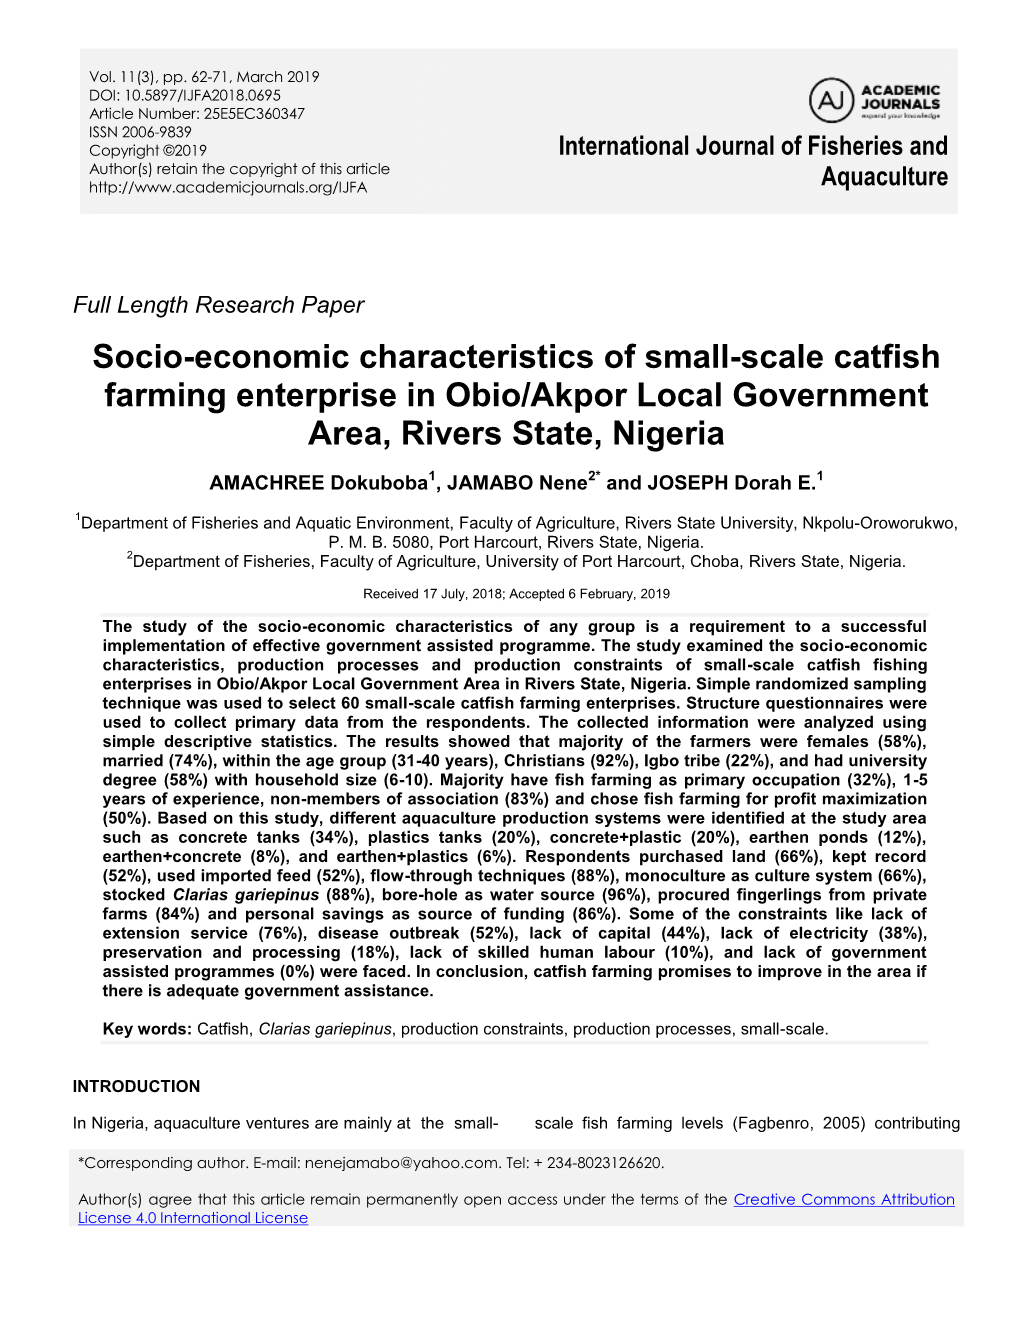 Socio-Economic Characteristics of Small-Scale Catfish Farming Enterprise in Obio/Akpor Local Government Area, Rivers State, Nigeria